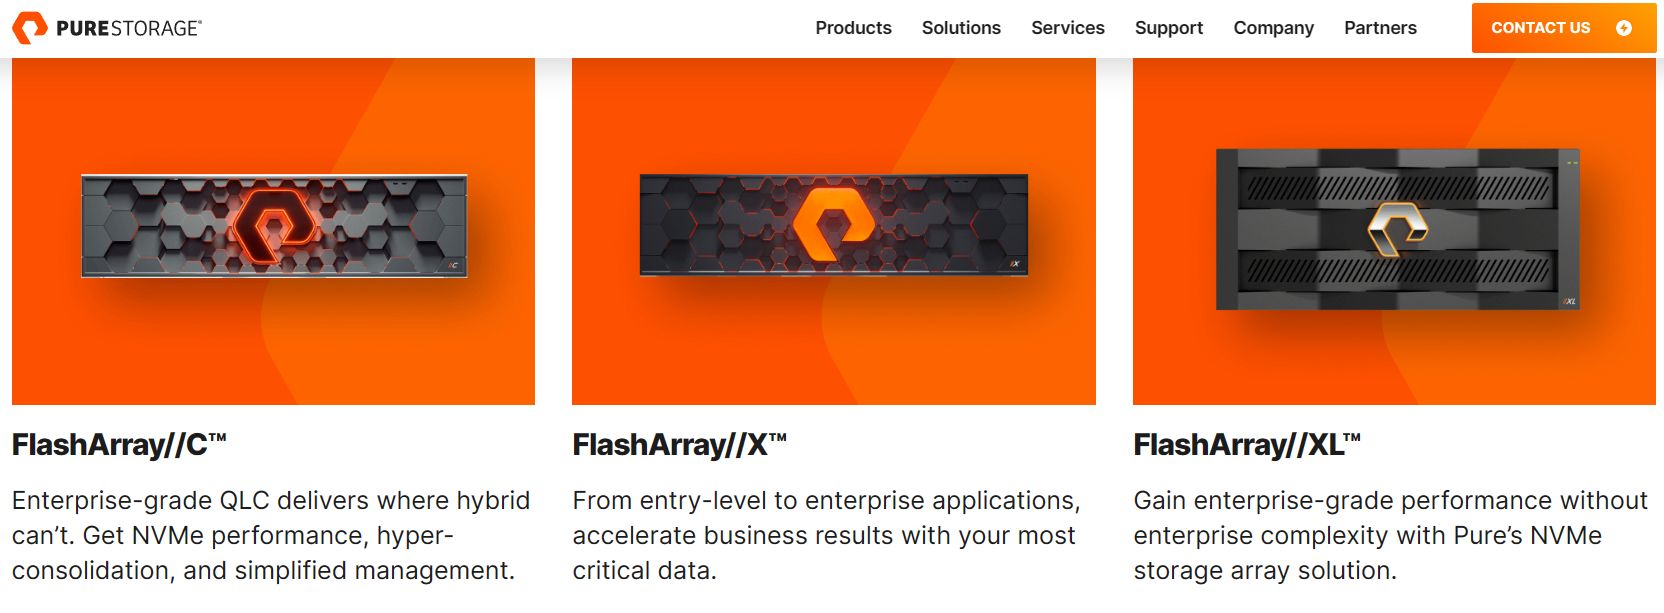 File Services per FlashArray: servizi nativi per blocchi e file da un unico pool globale di risorse storage